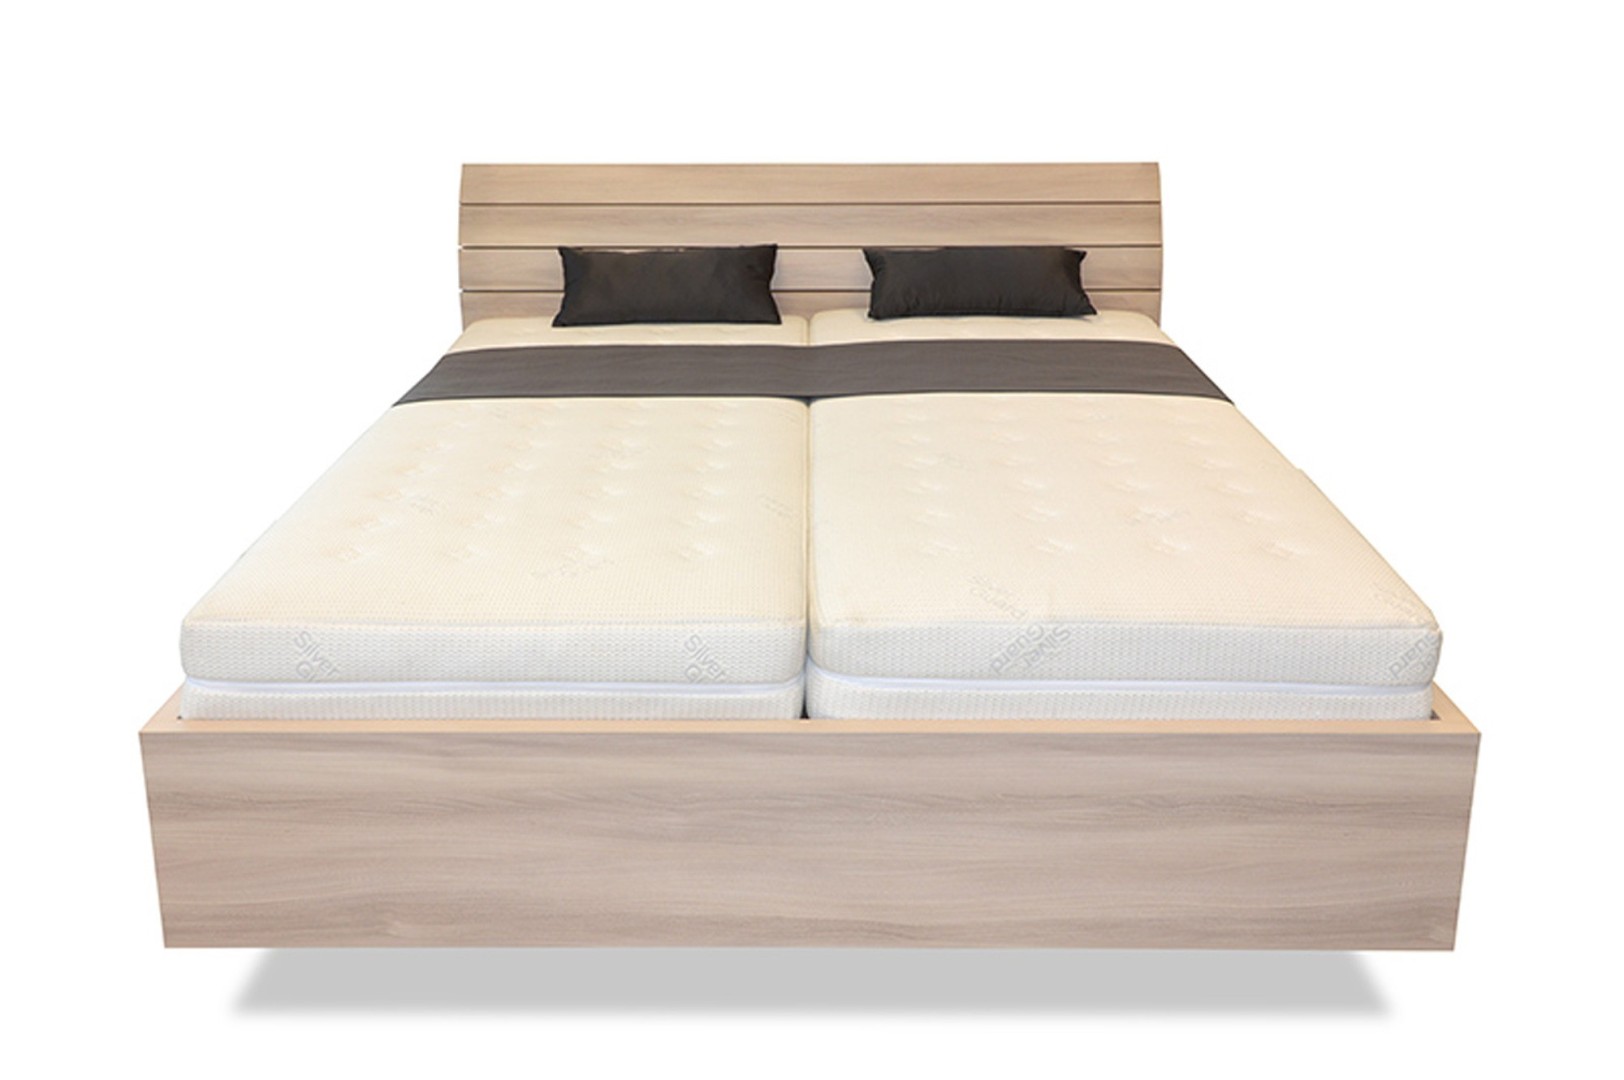 Ahorn SALINA Basic - vznášející se dvoulůžková postel 180 x 220 cm, lamino